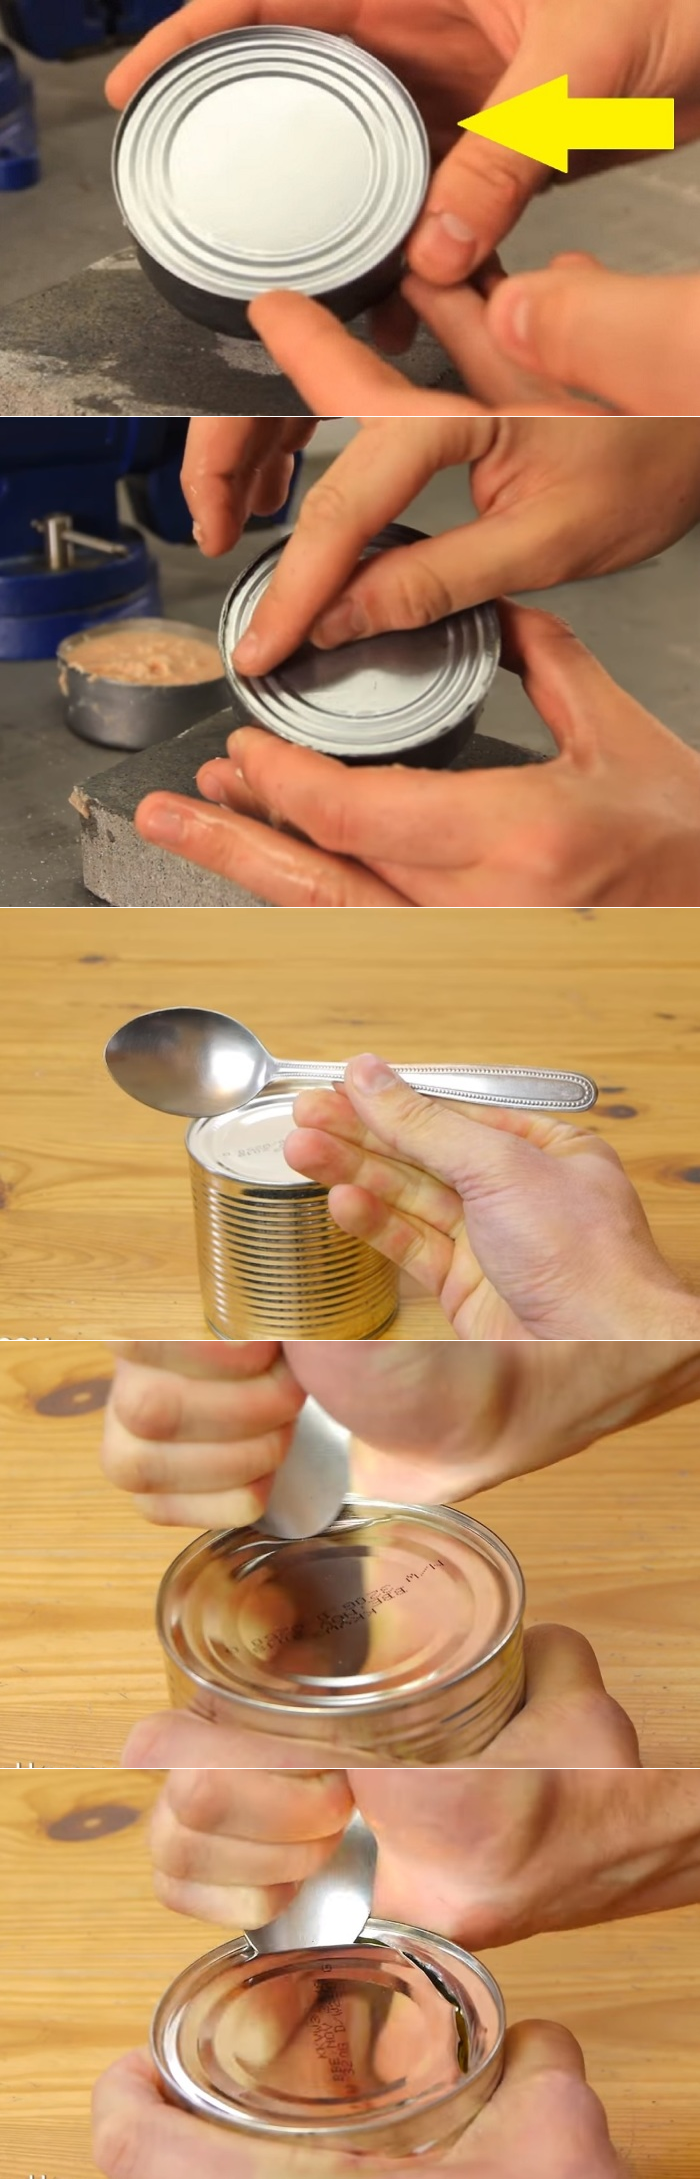 Как открыть консервную банку со шпротами открывалкой, консервным ножом и другими способами